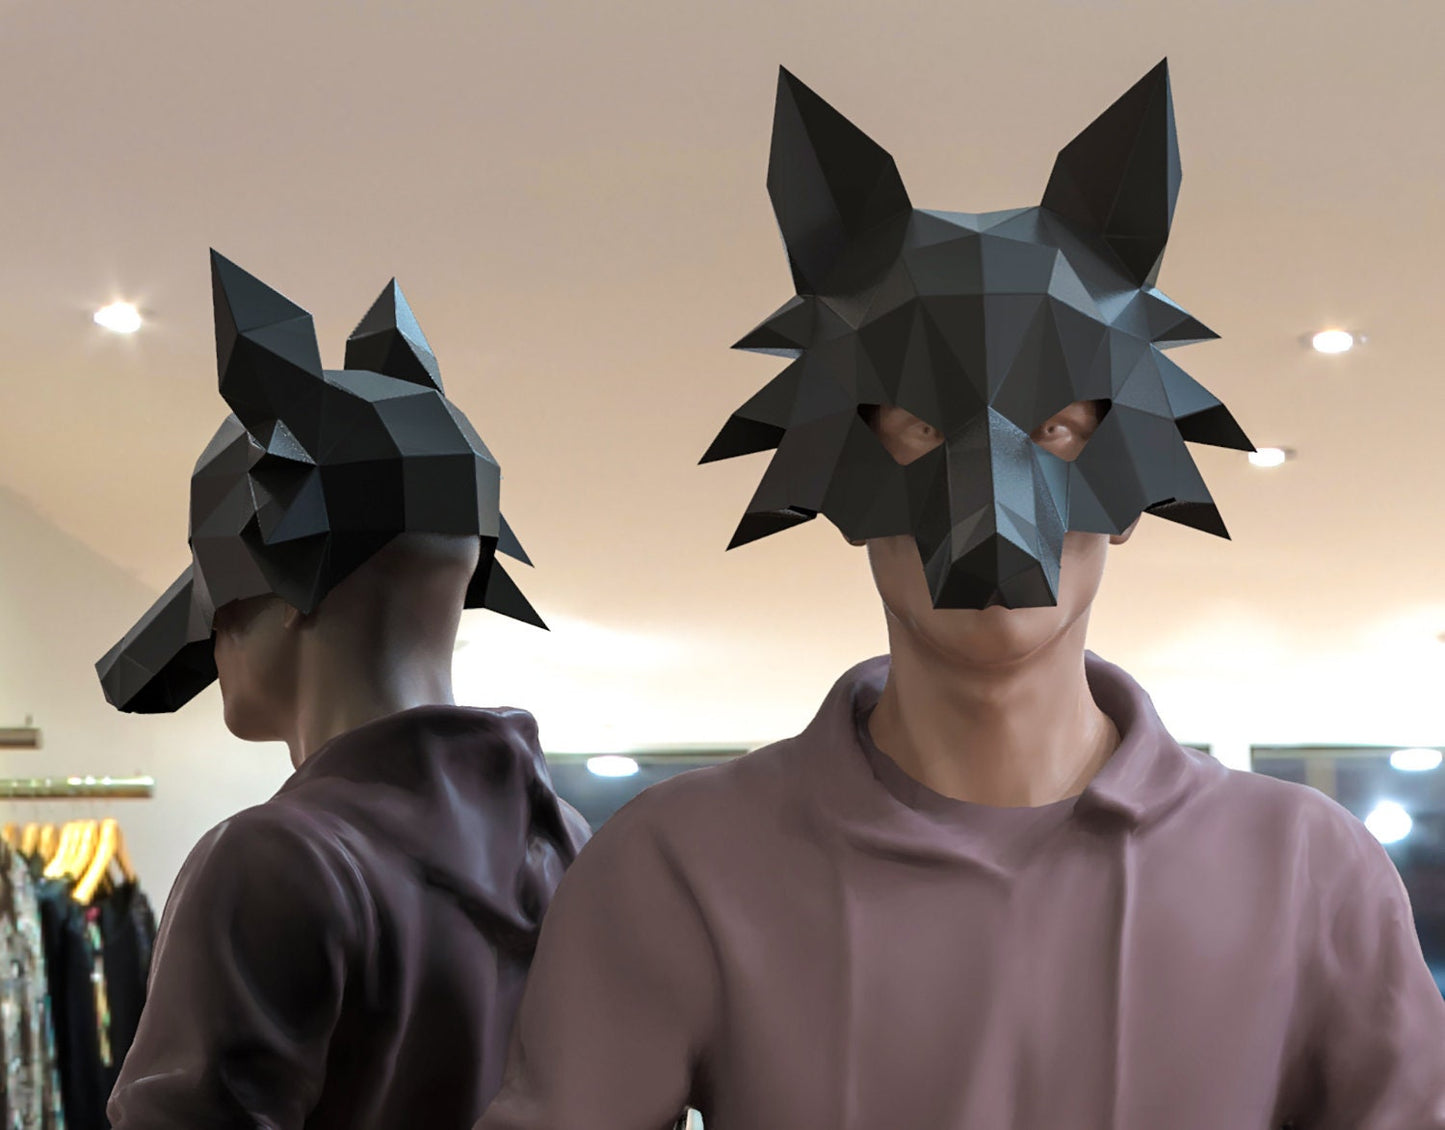 Wolf mask